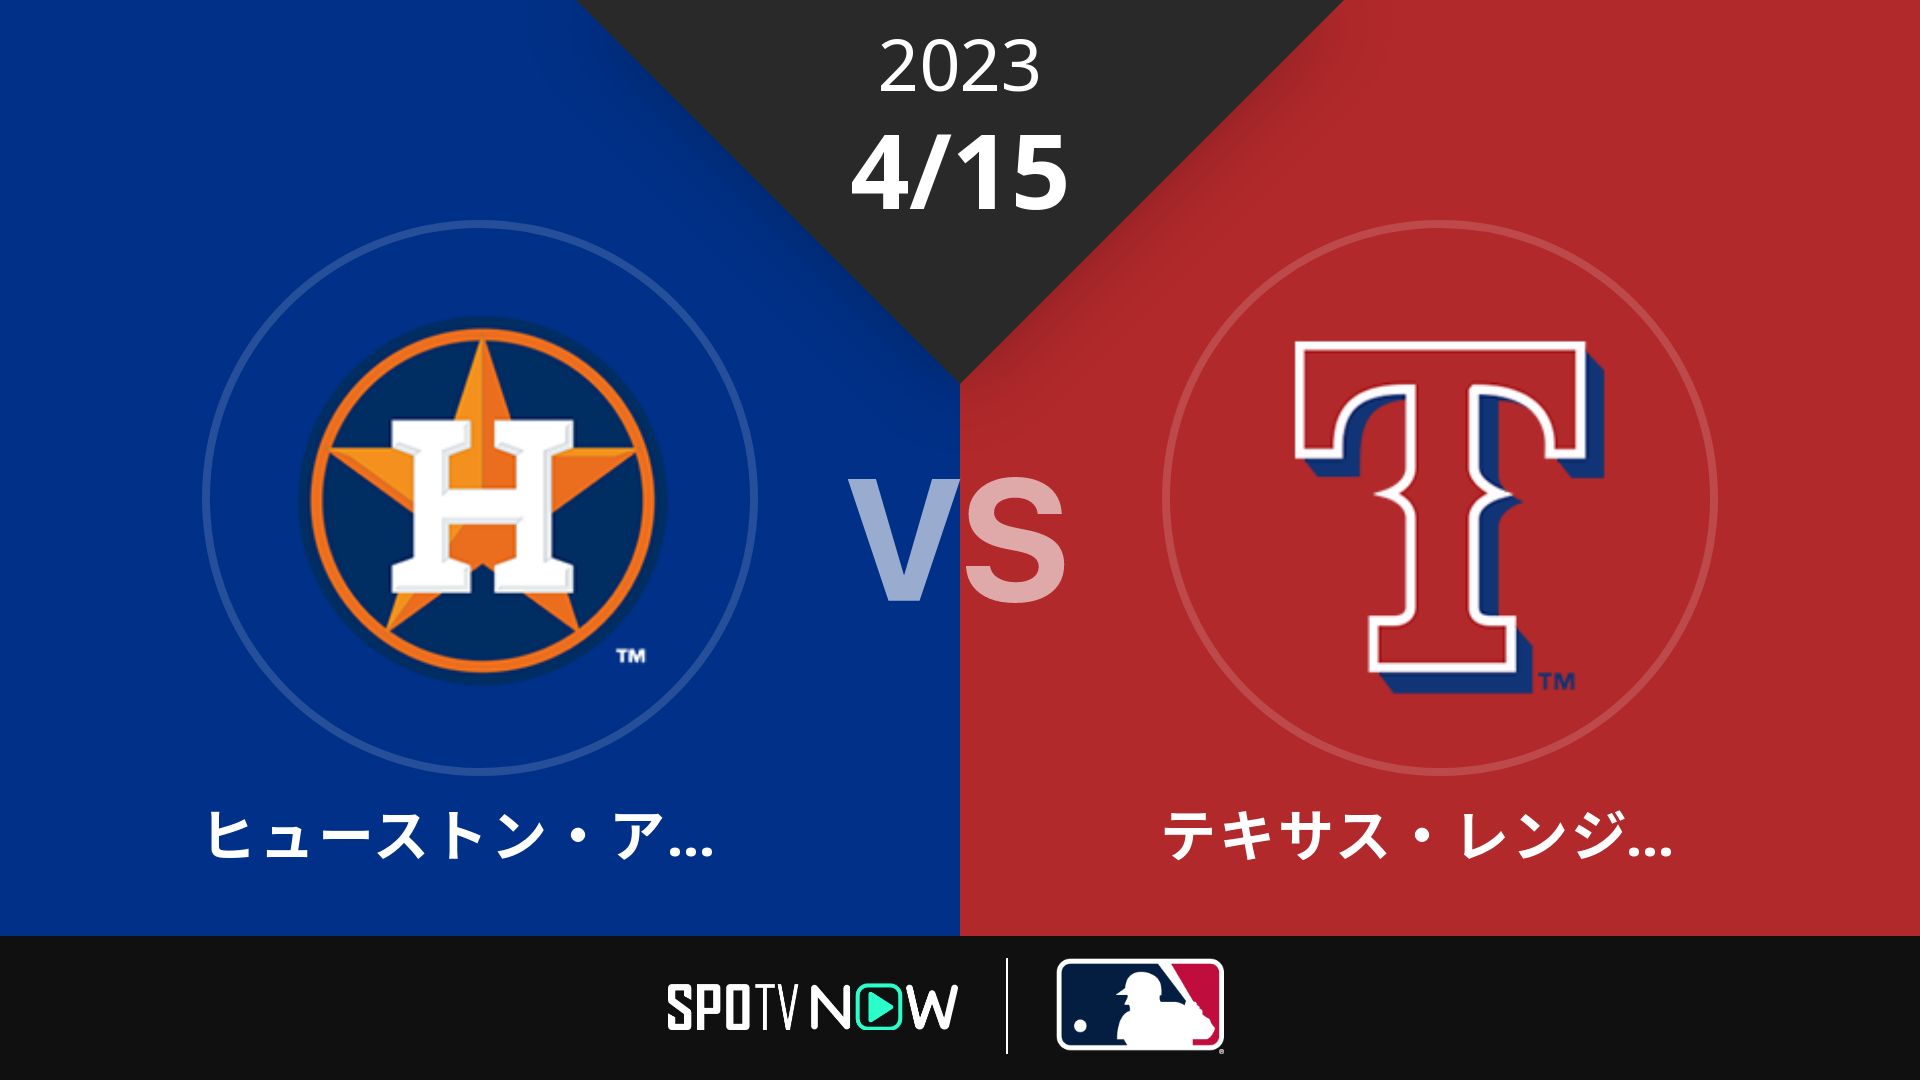 2023/4/15 アストロズ vs レンジャーズ [MLB]